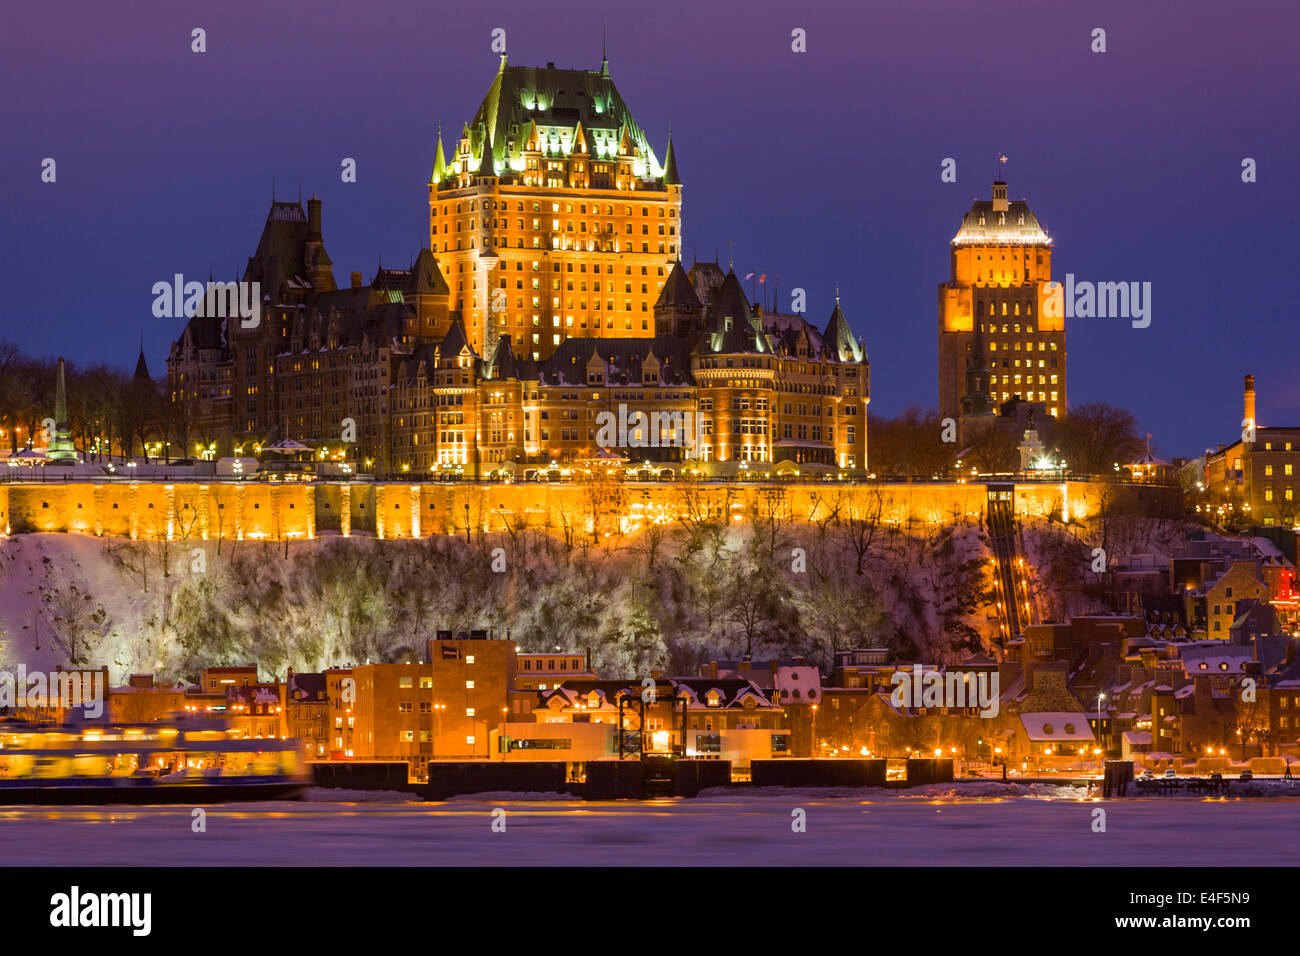 Sur les toits de la ville au crépuscule, montrant le Château Frontenac en hiver, comme vu à travers le fleuve Saint-Laurent, la ville de Québec, Québec Banque D'Images